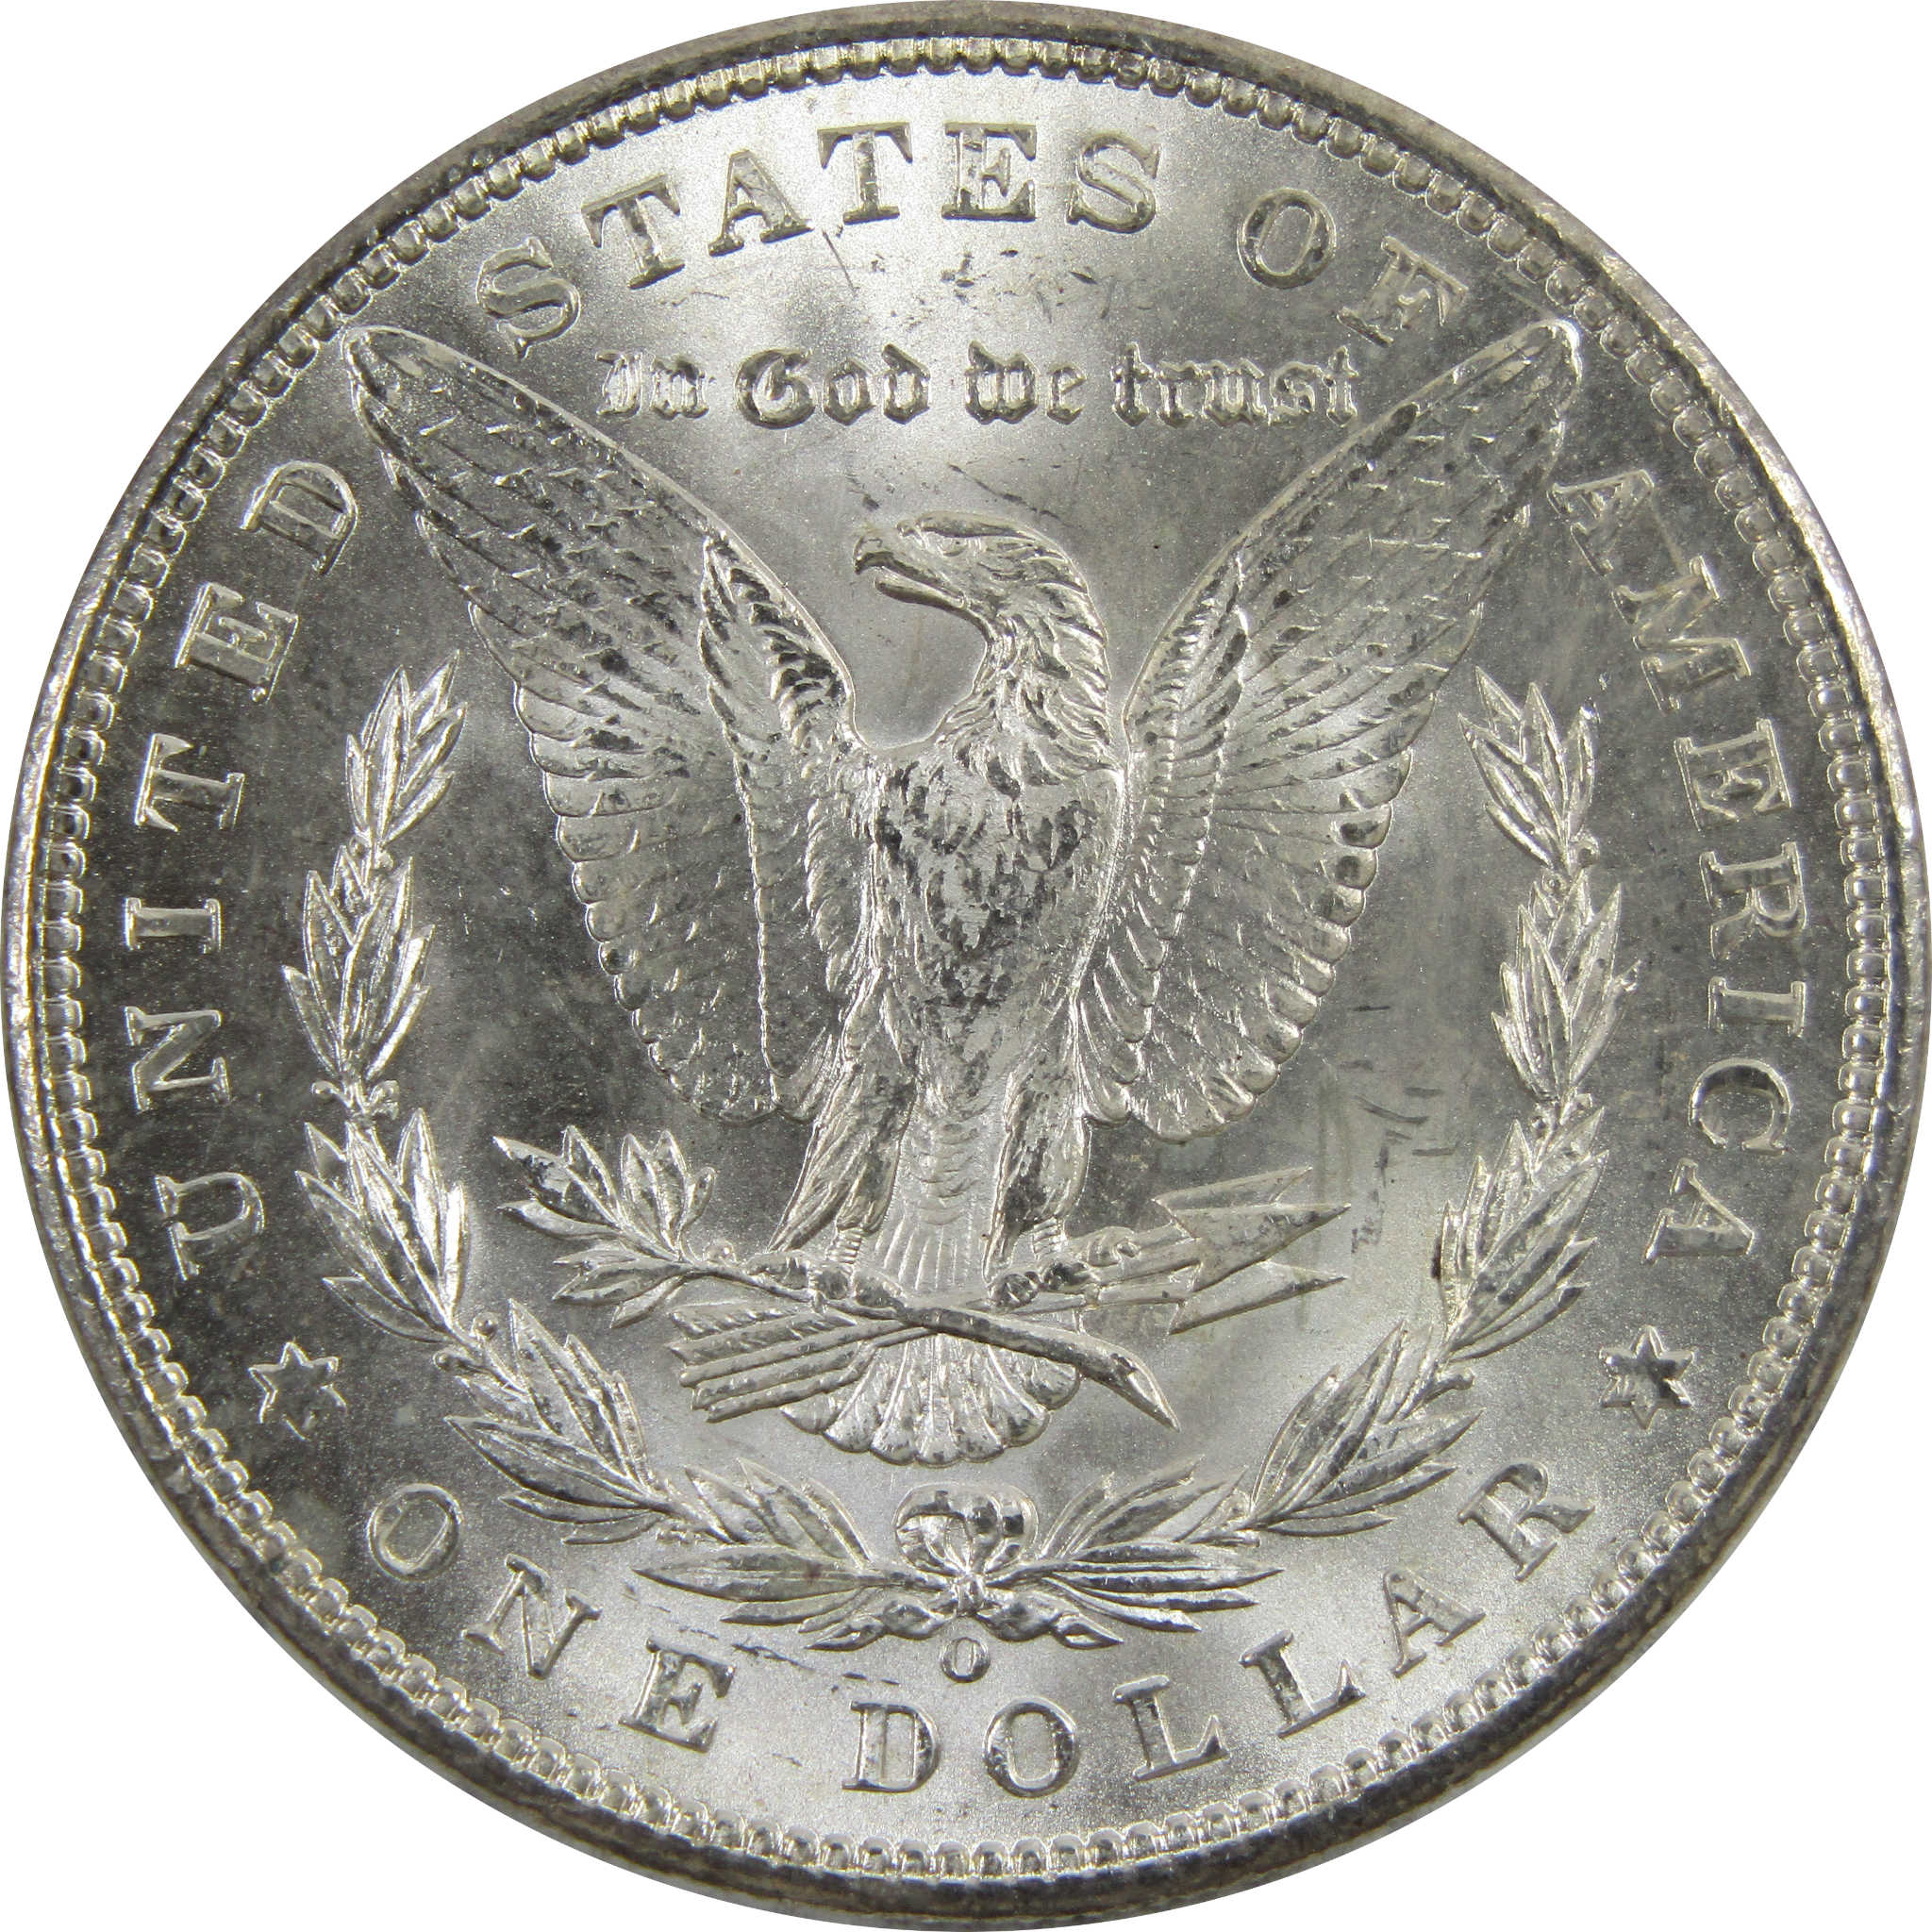 1898 O Morgan Dollar BU Uncirculated 90% Silver $1 Coin SKU:I5261 - Morgan coin - Morgan silver dollar - Morgan silver dollar for sale - Profile Coins &amp; Collectibles